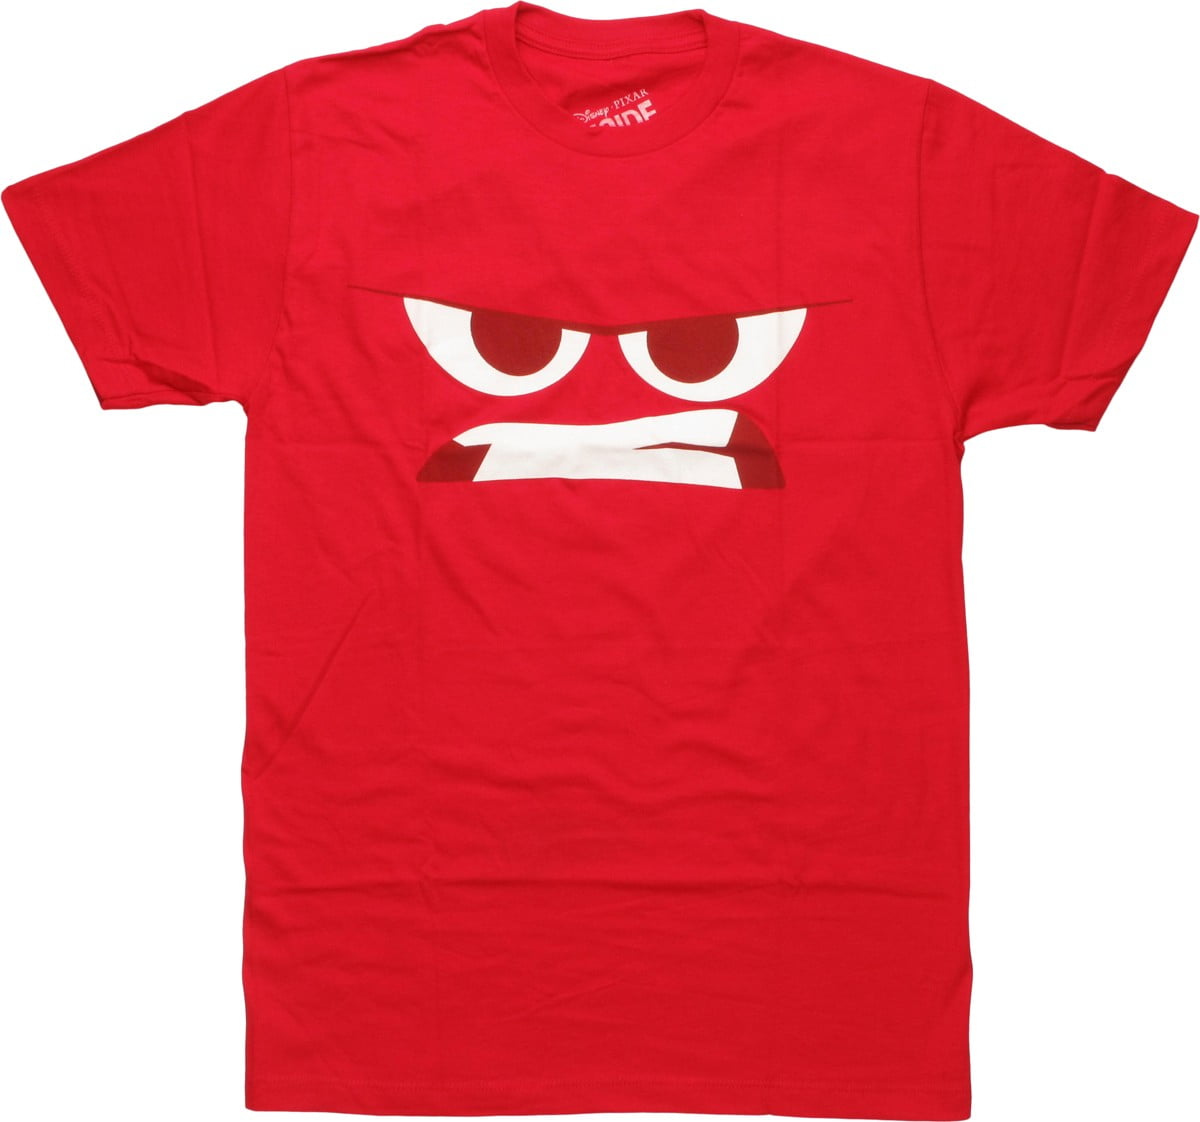 Inside Out Anger Face T-Shirt - Walmart.com